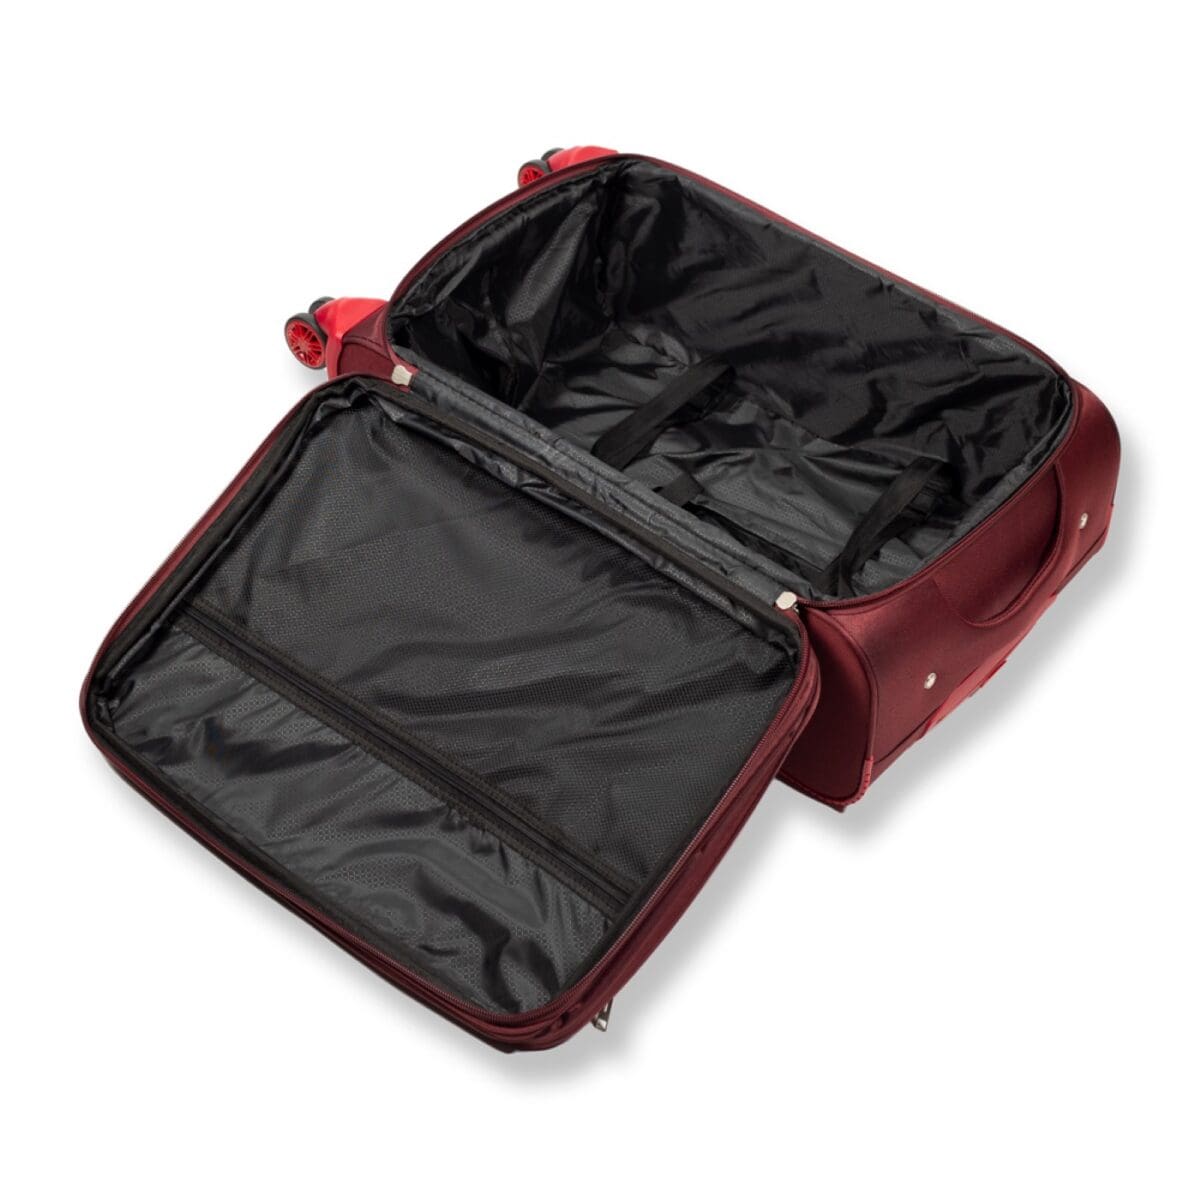 Εσωτερικό βαλίτσας υφασμάτινης με φερμουάρ